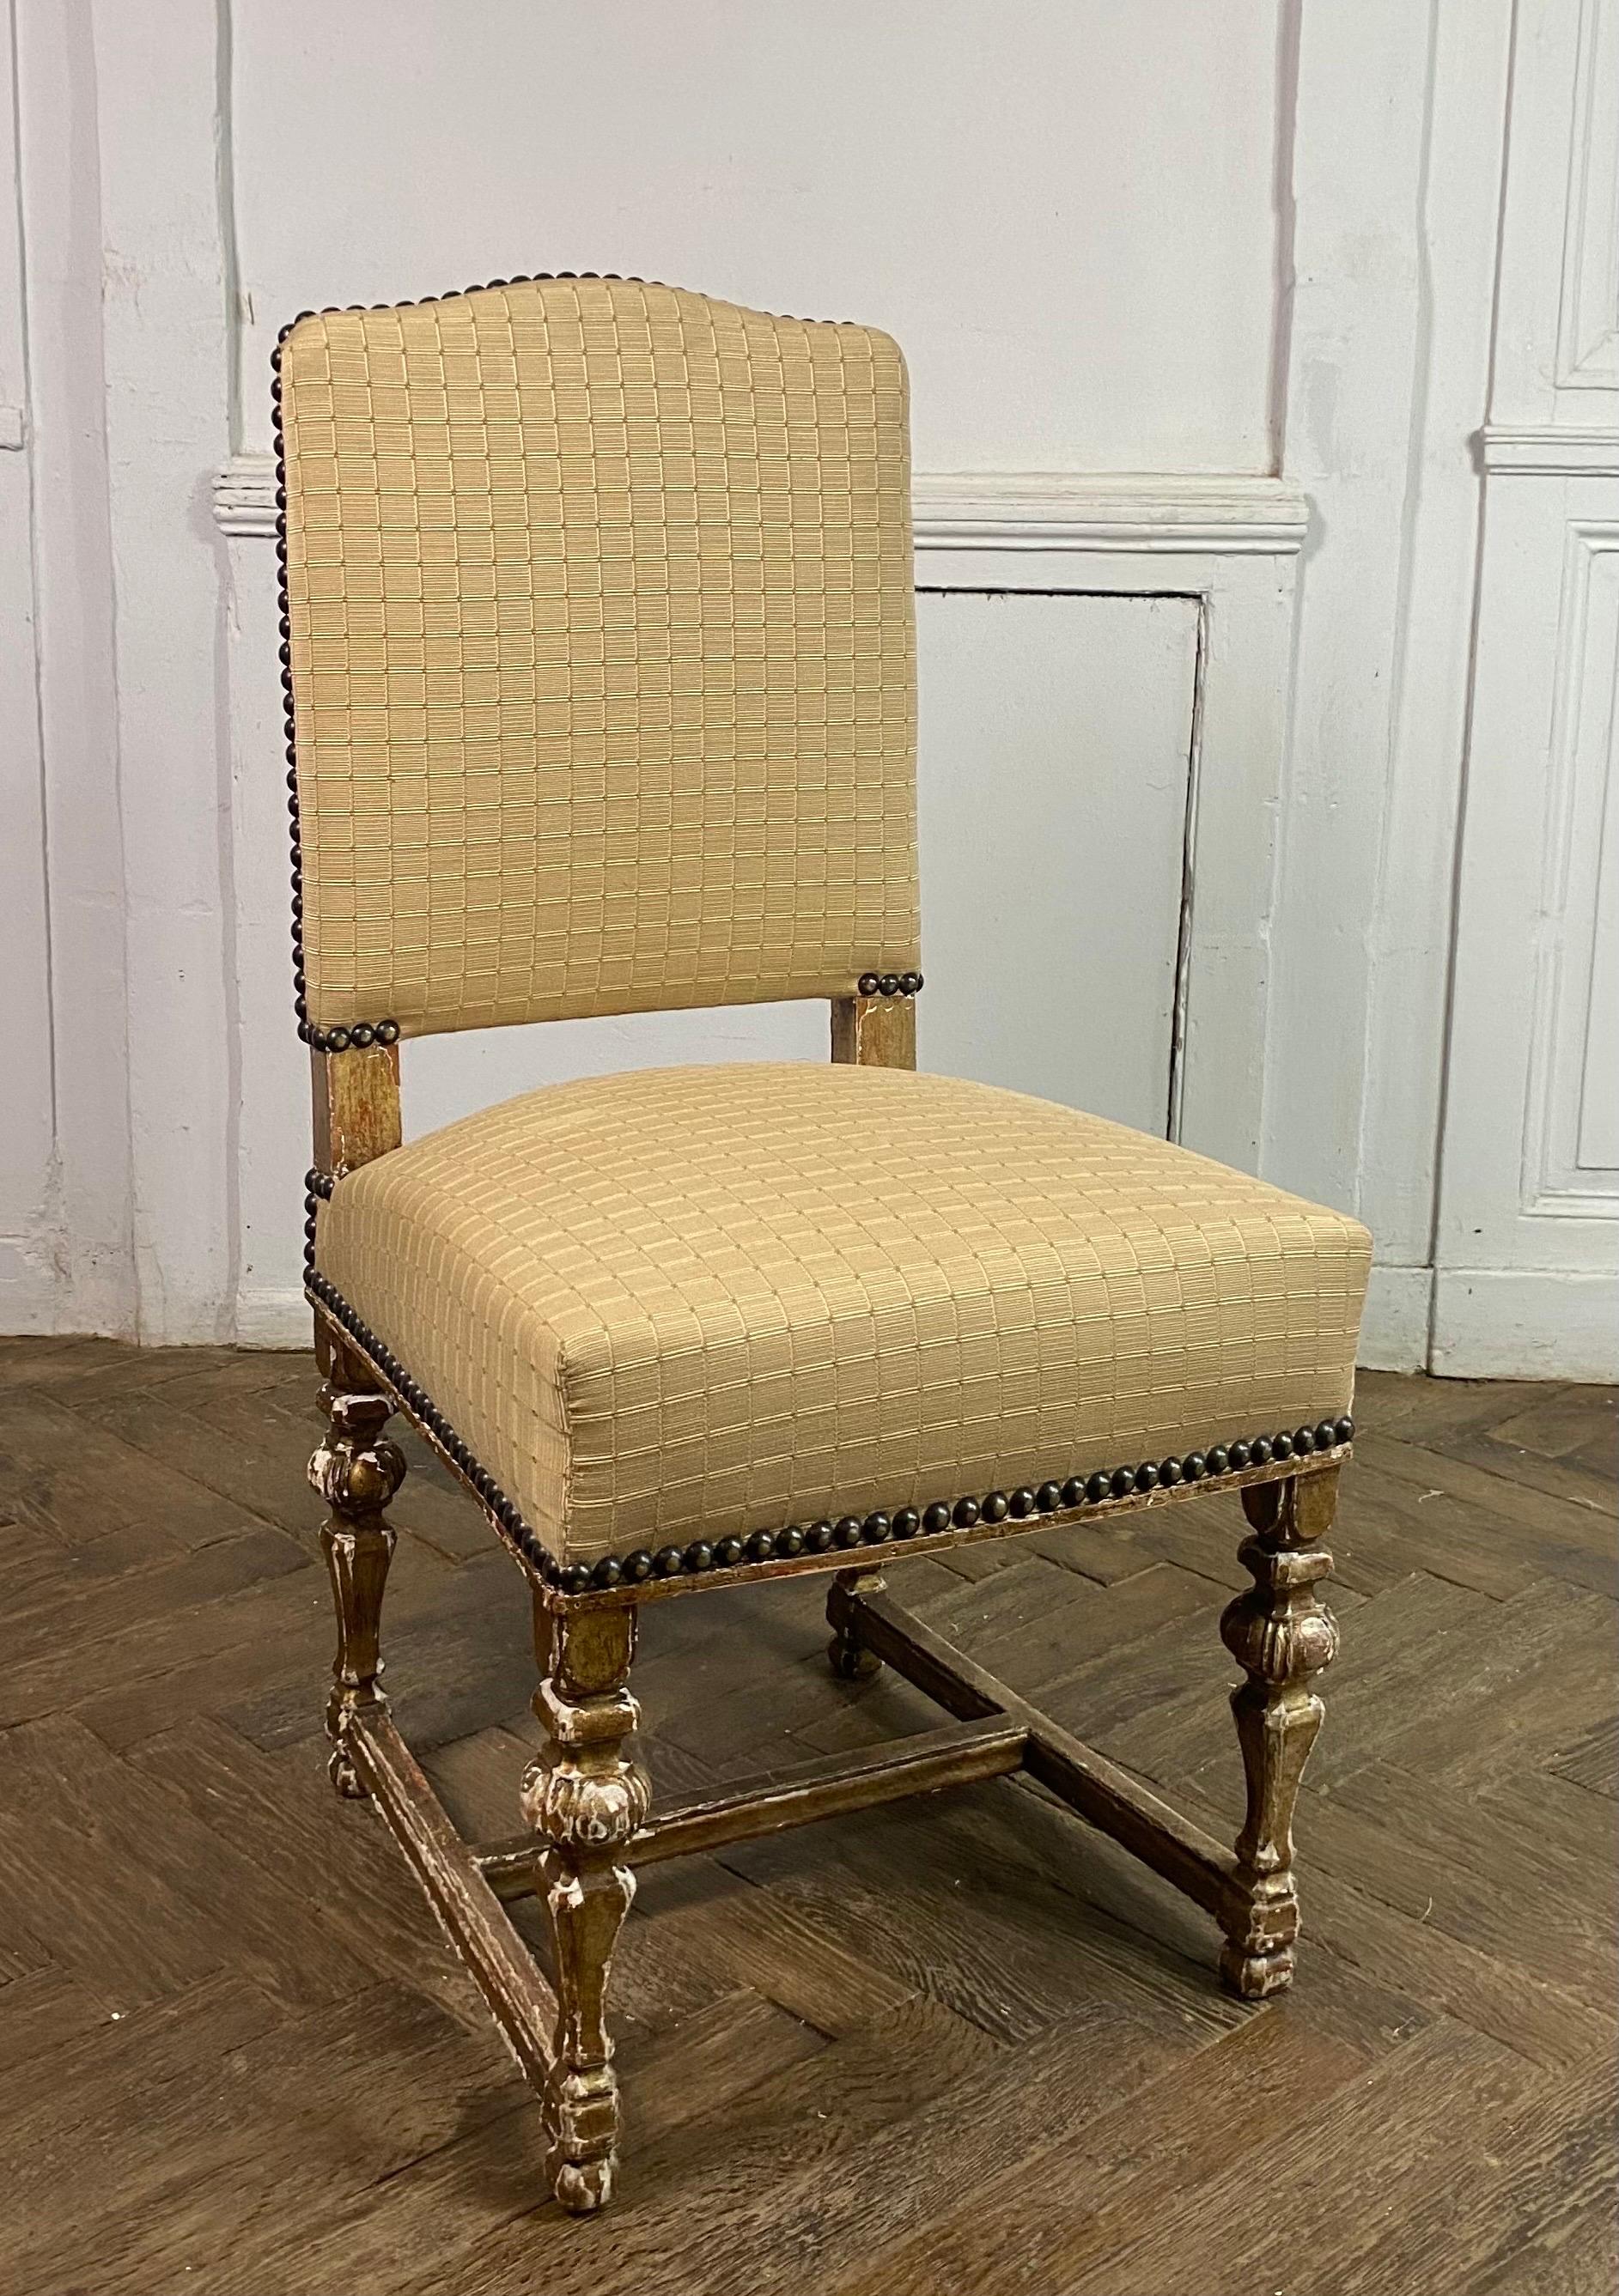 Schöner Satz von 8 Stühlen im Louis XIV-Stil mit Balustersockel aus vergoldetem Holz, verbunden durch einen Abstandshalter. Die Garnitur wurde mit einem sehr hochwertigen beigen Stoff mit rechteckigen Mustern neu bezogen. Lücken in der Vergoldung,